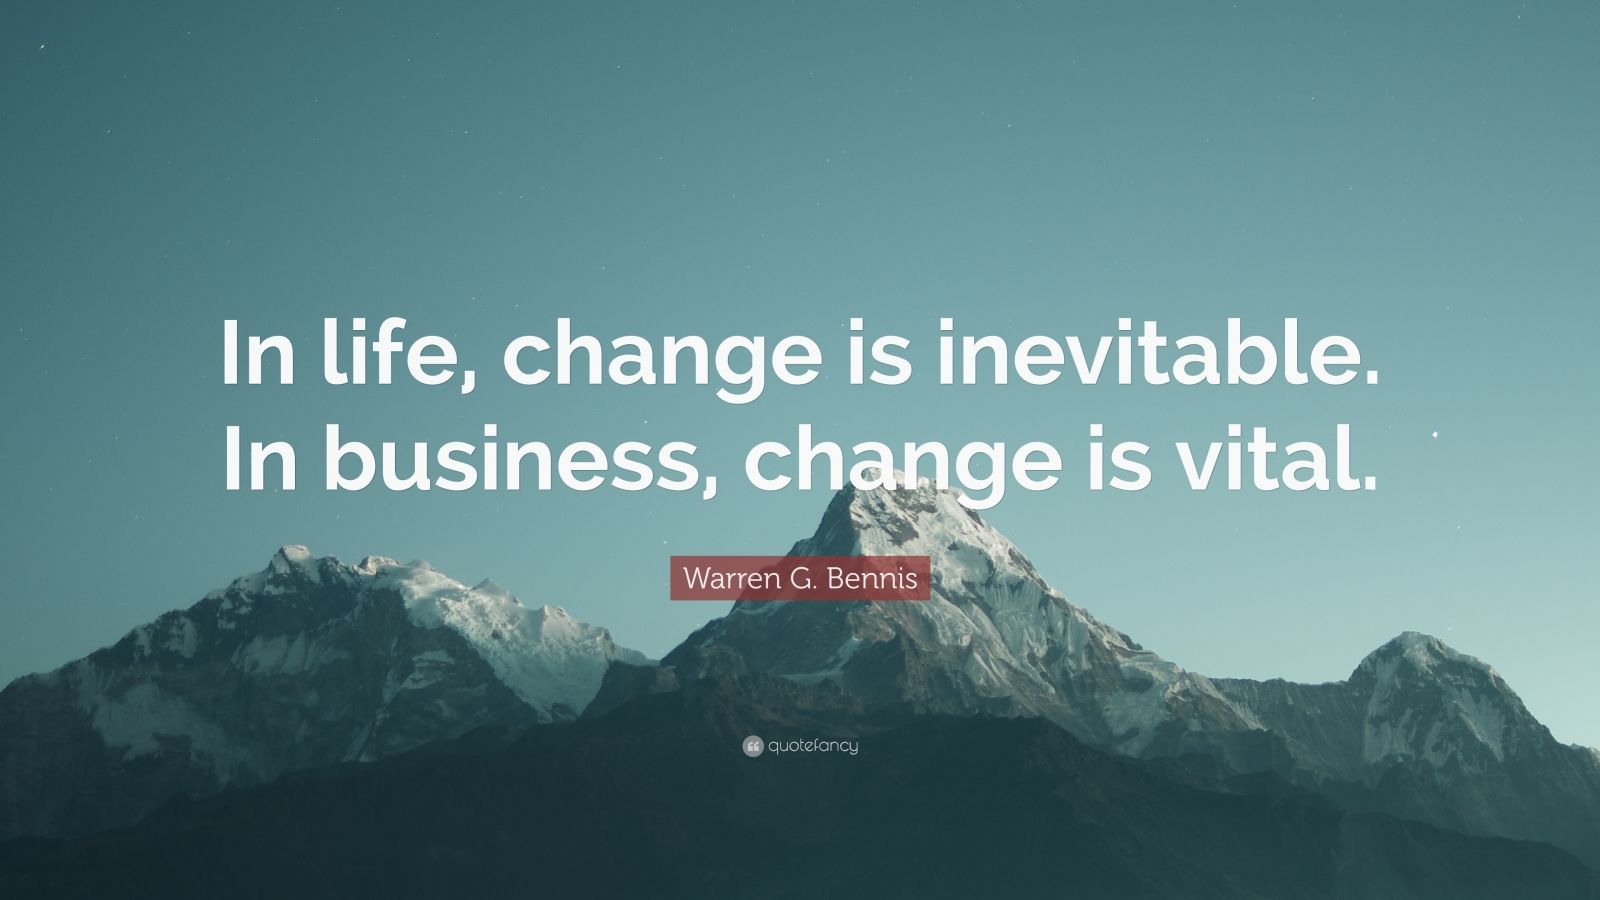 Warren G. Bennis Quote: “In life, change is inevitable. In business ...